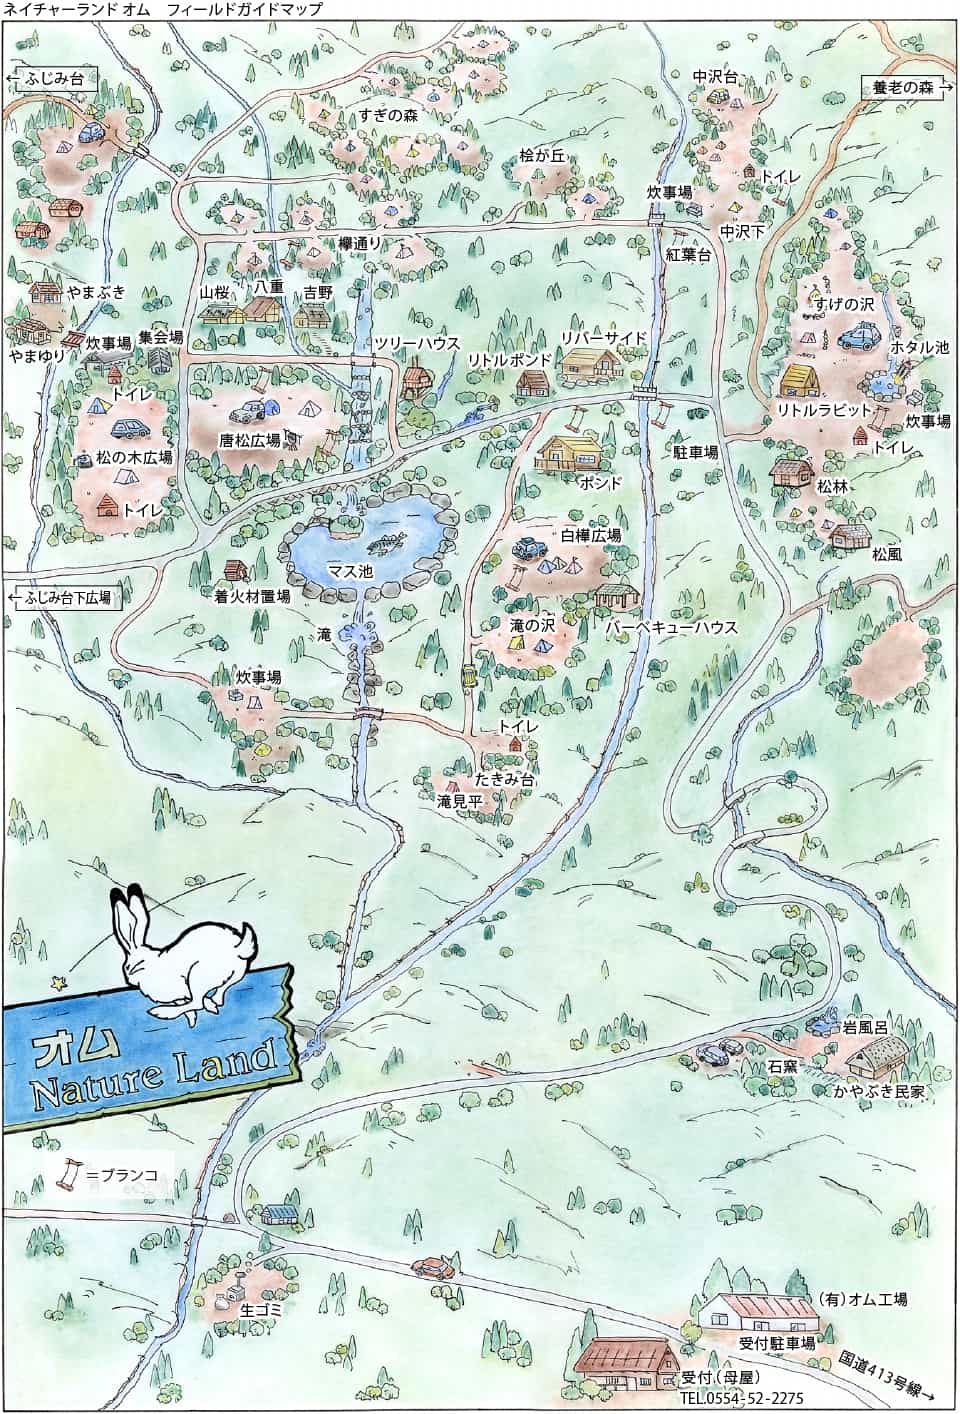 キャンプ場マップ